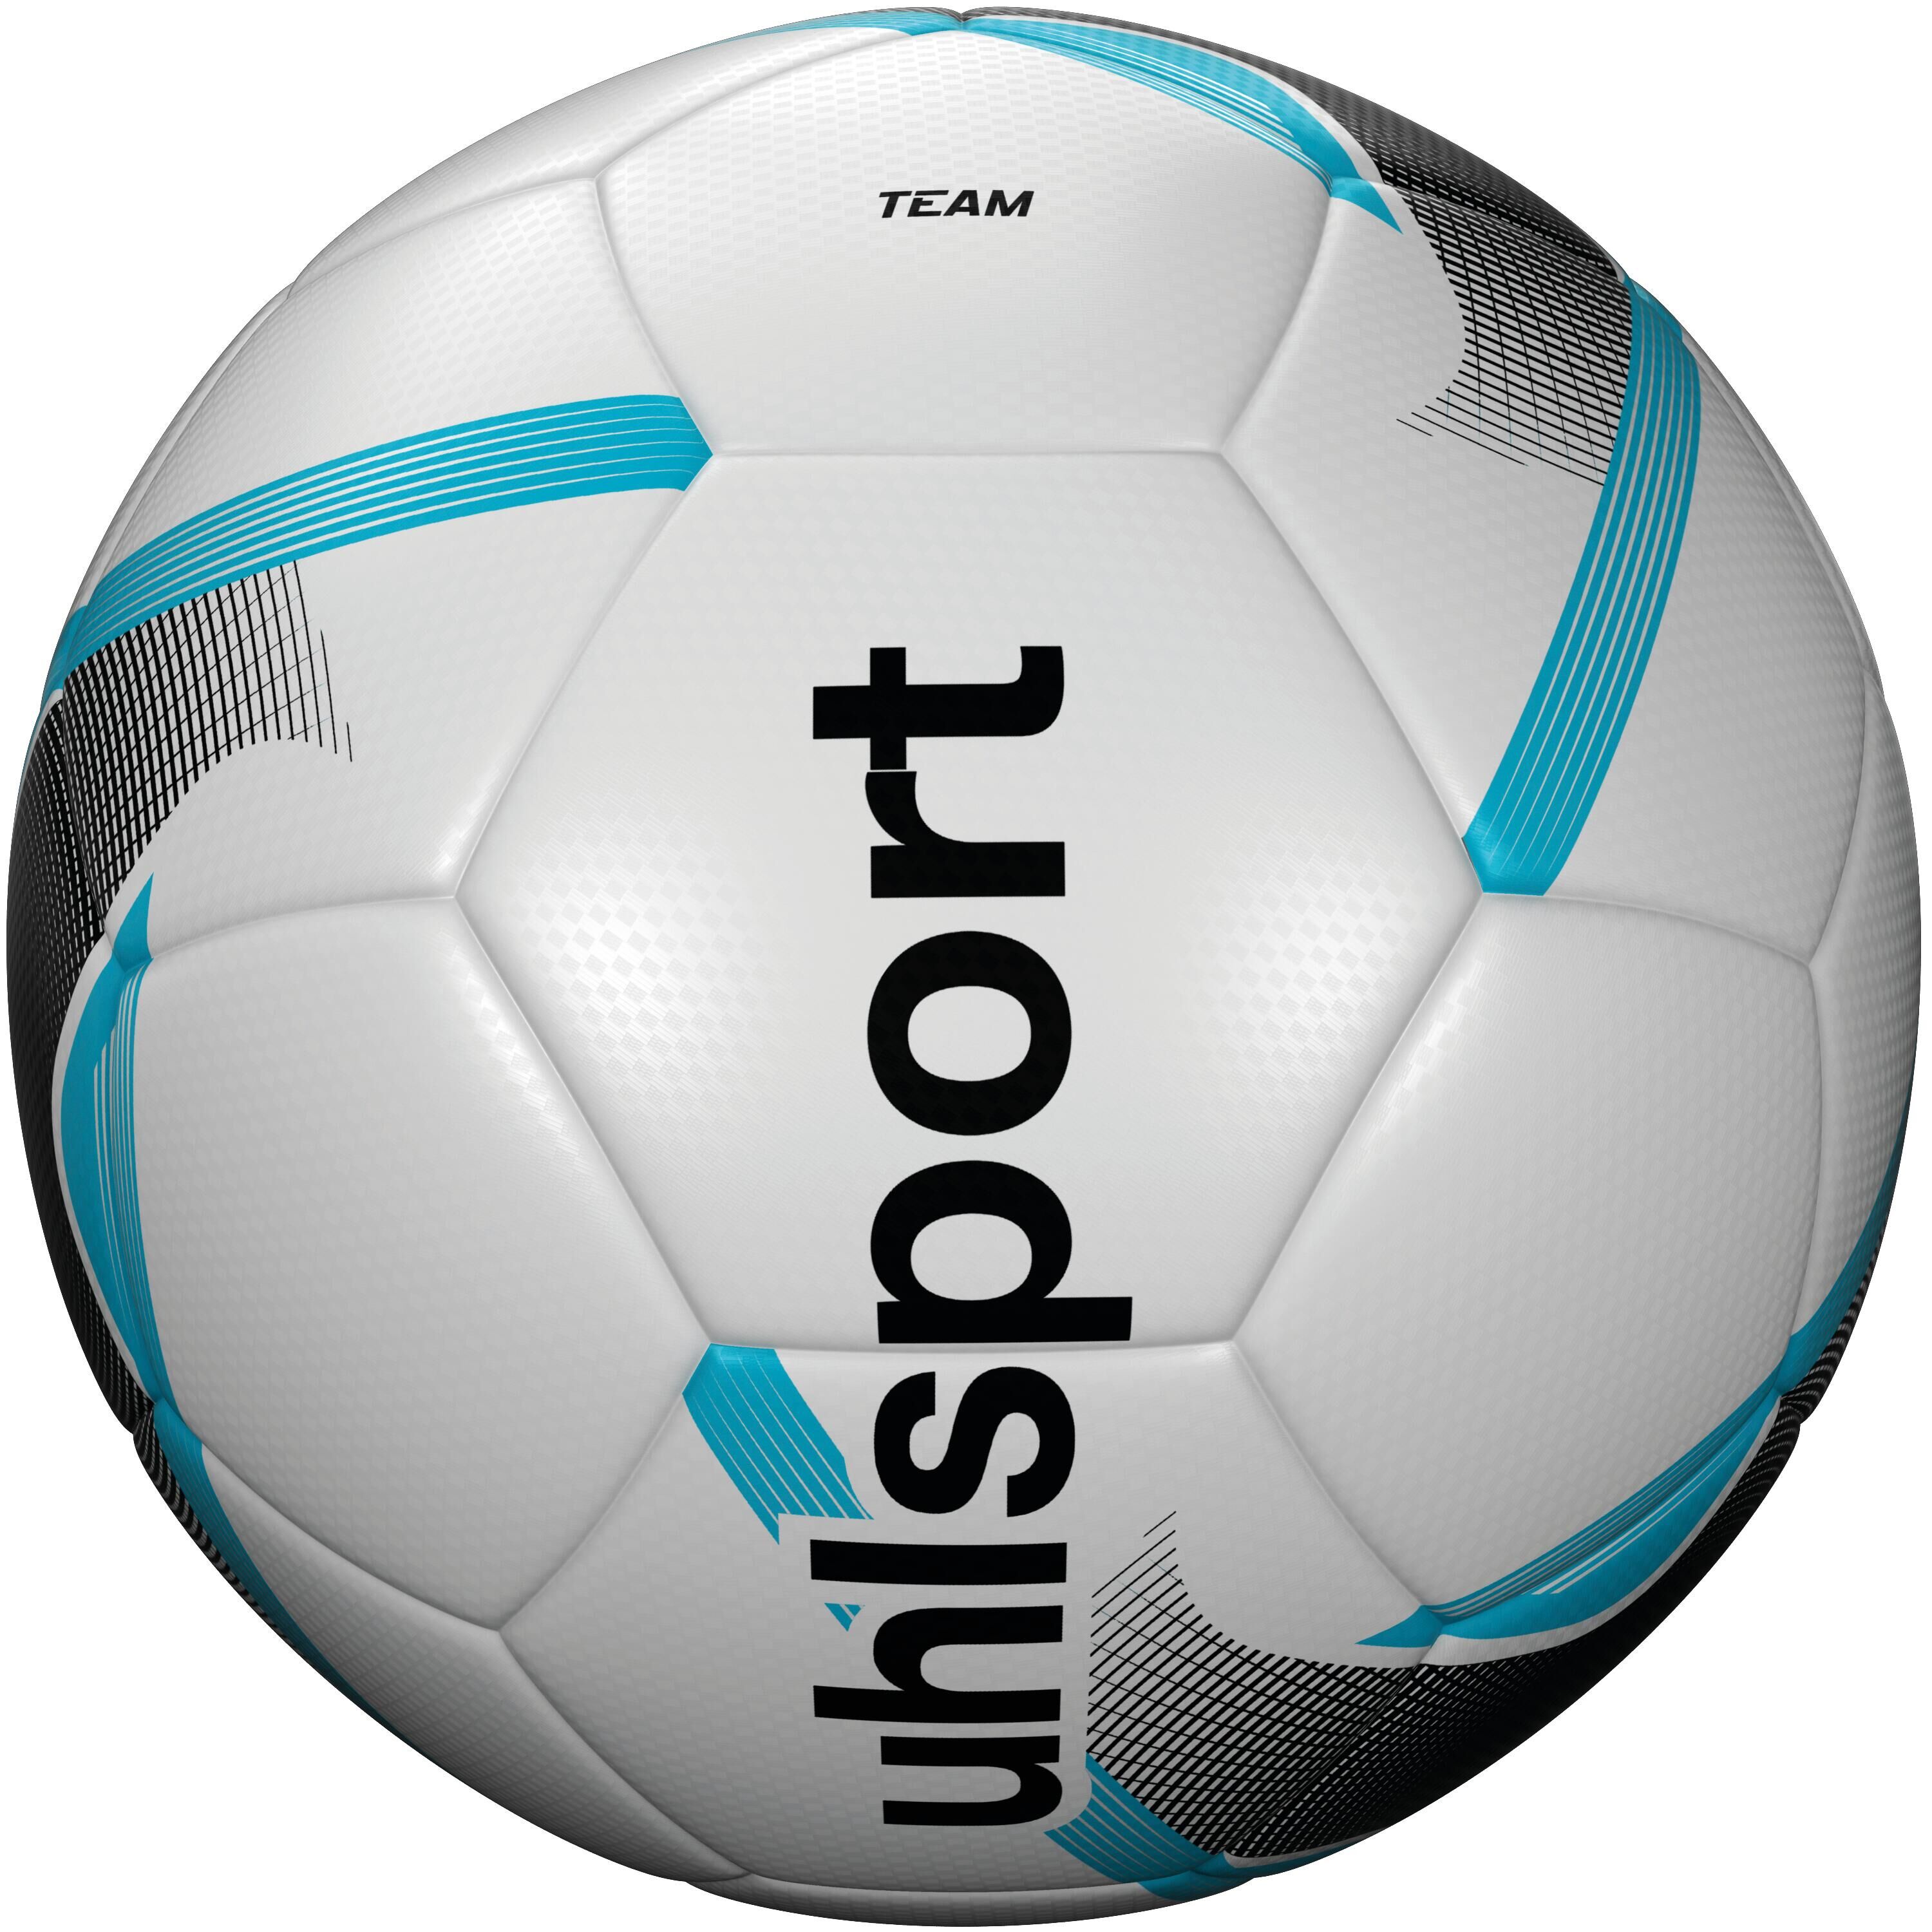 UHLSPORT Uhlsport Team Training Football Size 3 - White